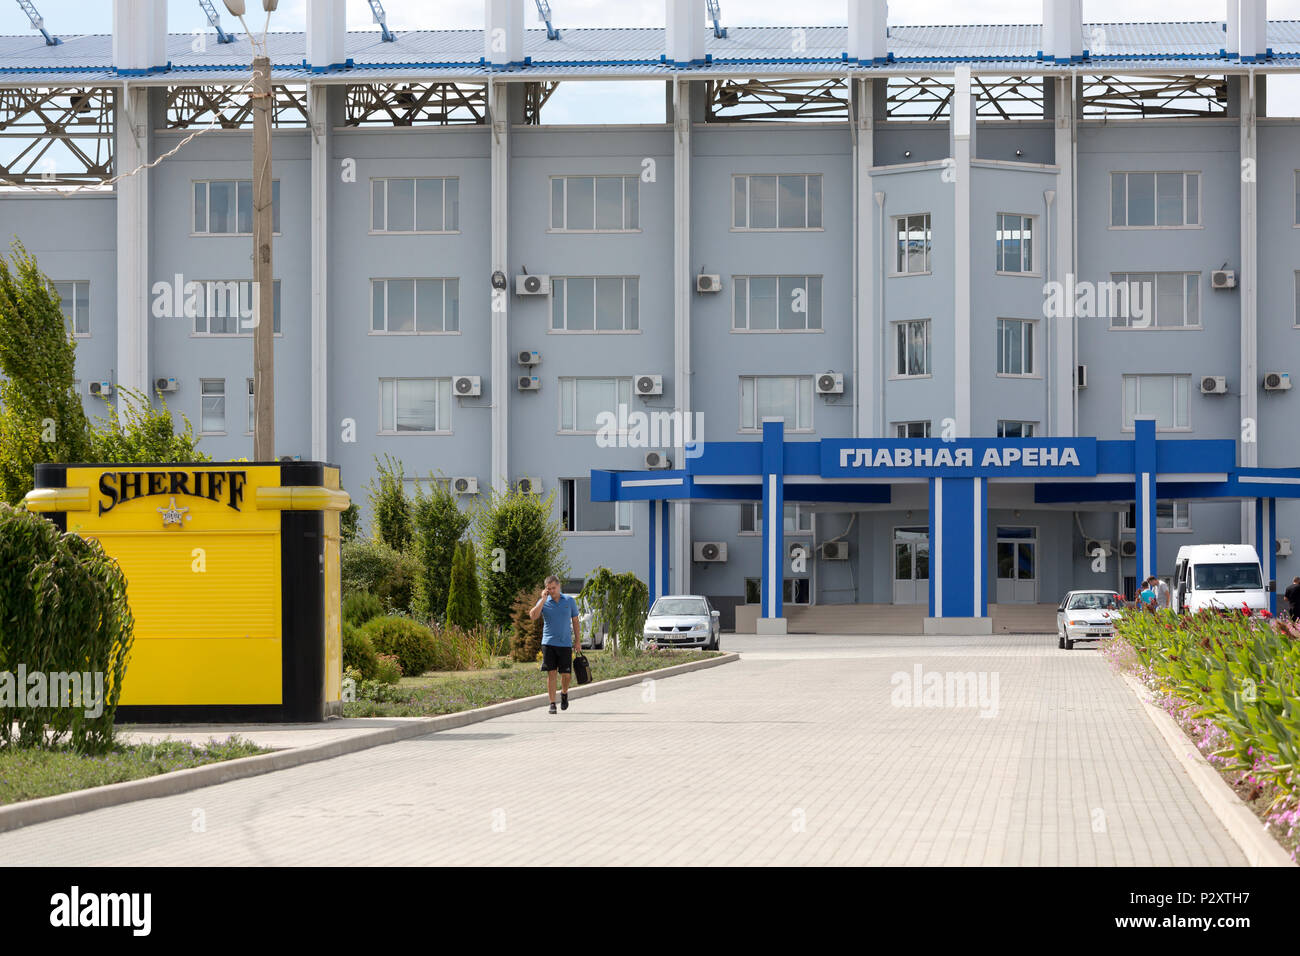 25.08.2016, Tiraspol, Transnistrien, Moldau - Der Sheriff Sportkomplex mit zwei Fußballstadien (Foto: Grosse Arena) gehört zur multikulturellen Stockfoto